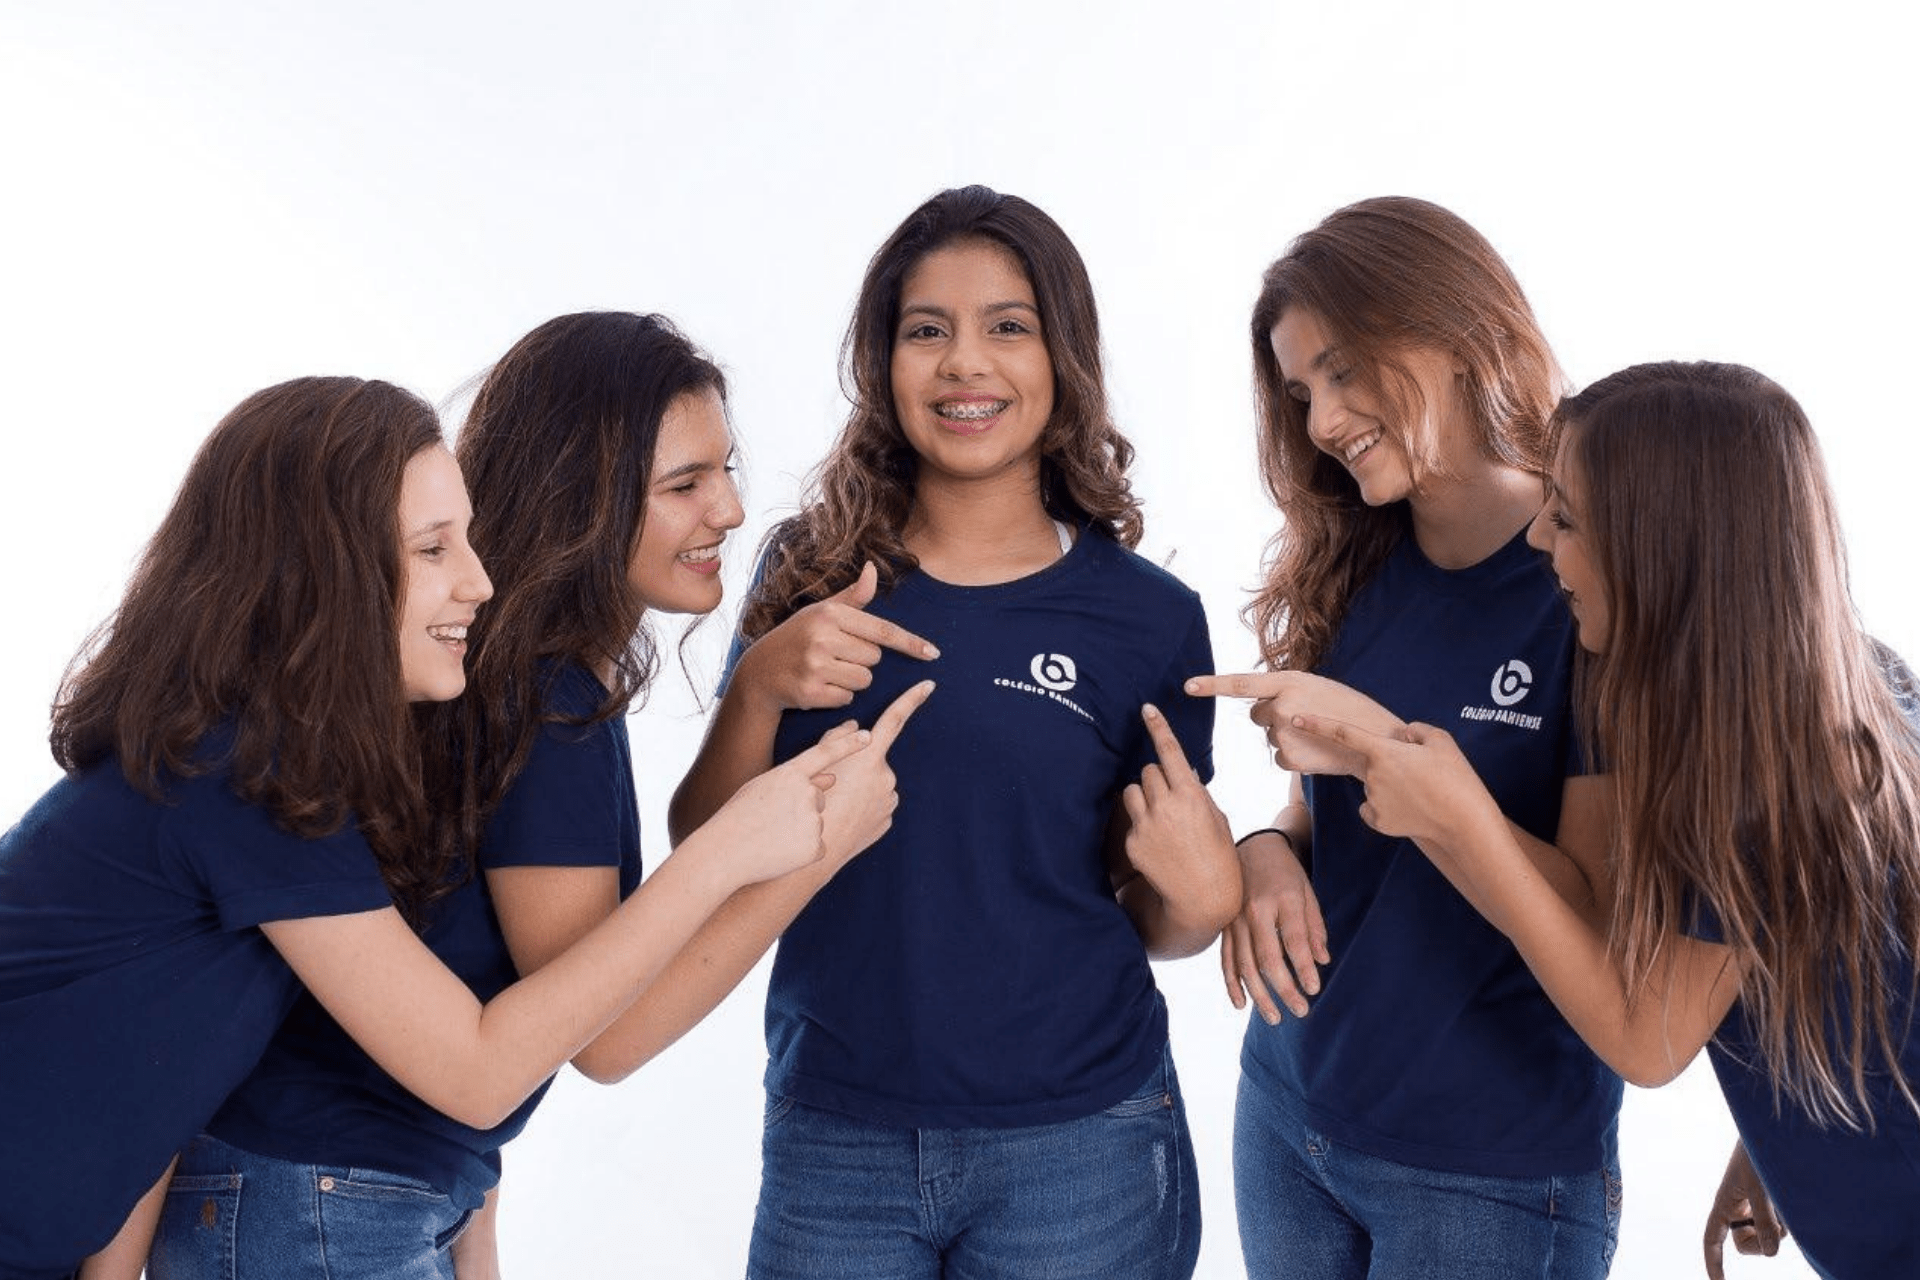 Grupo com cinco estudantes vestindo o uniforme Colégio Bahiense, apontando para o logo da escola da adolescente focalizado no centro da foto